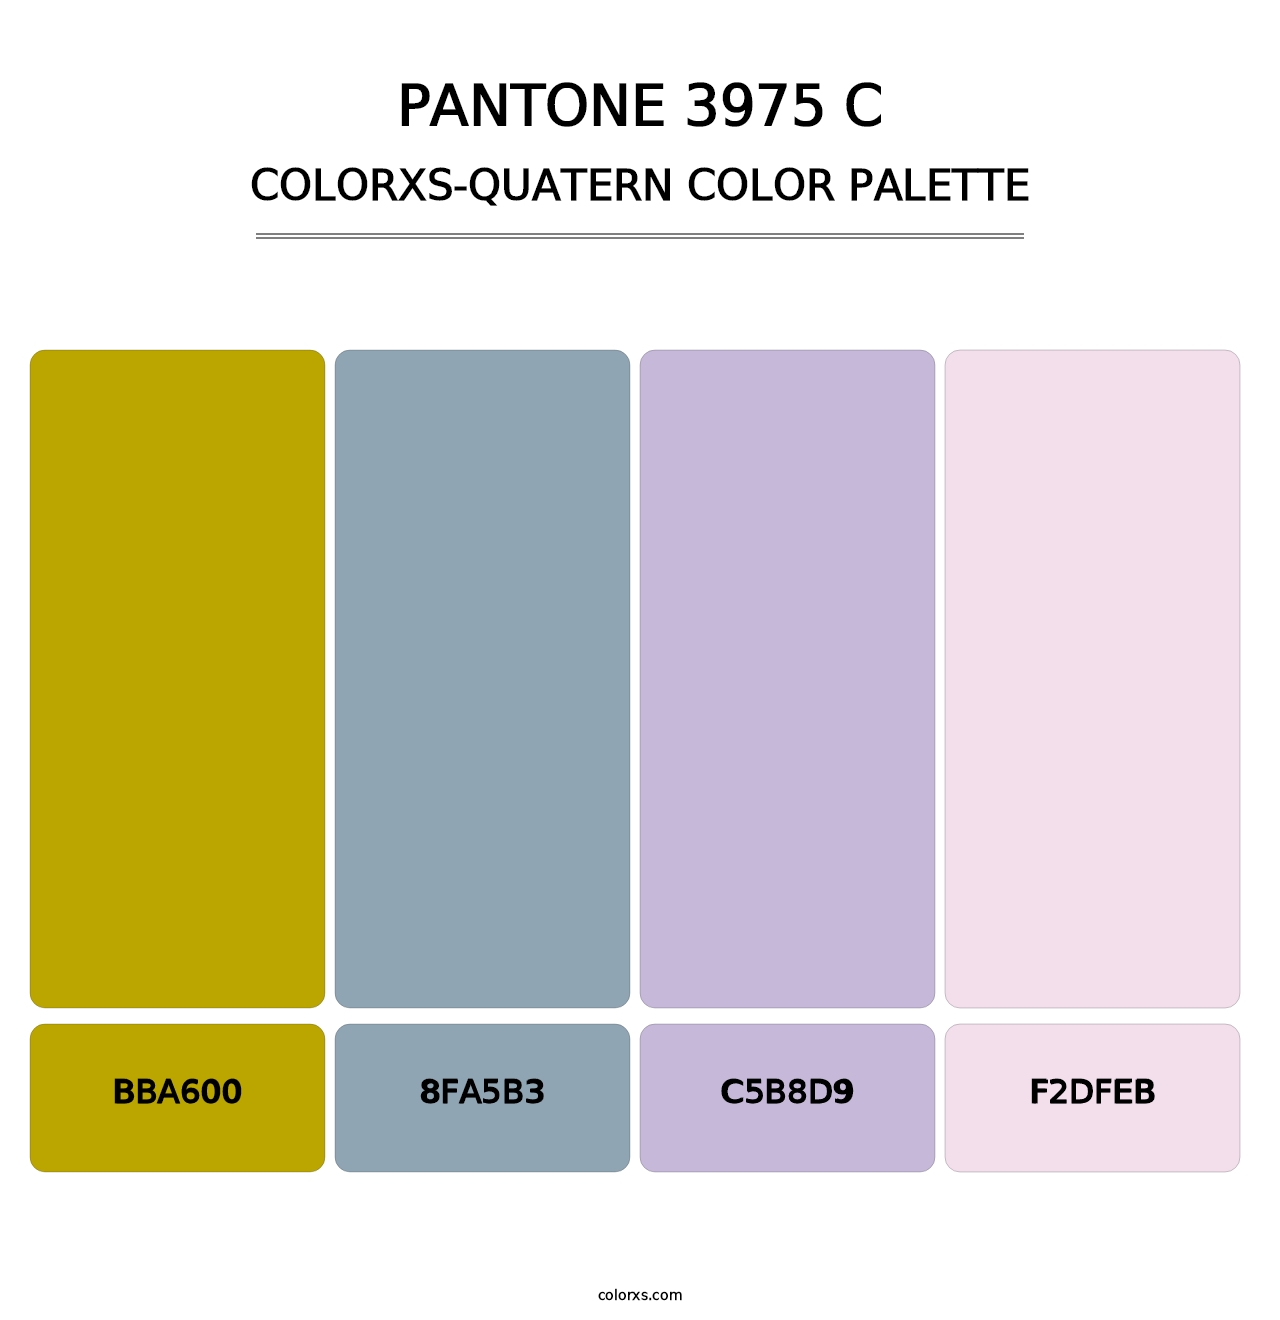 PANTONE 3975 C - Colorxs Quatern Palette